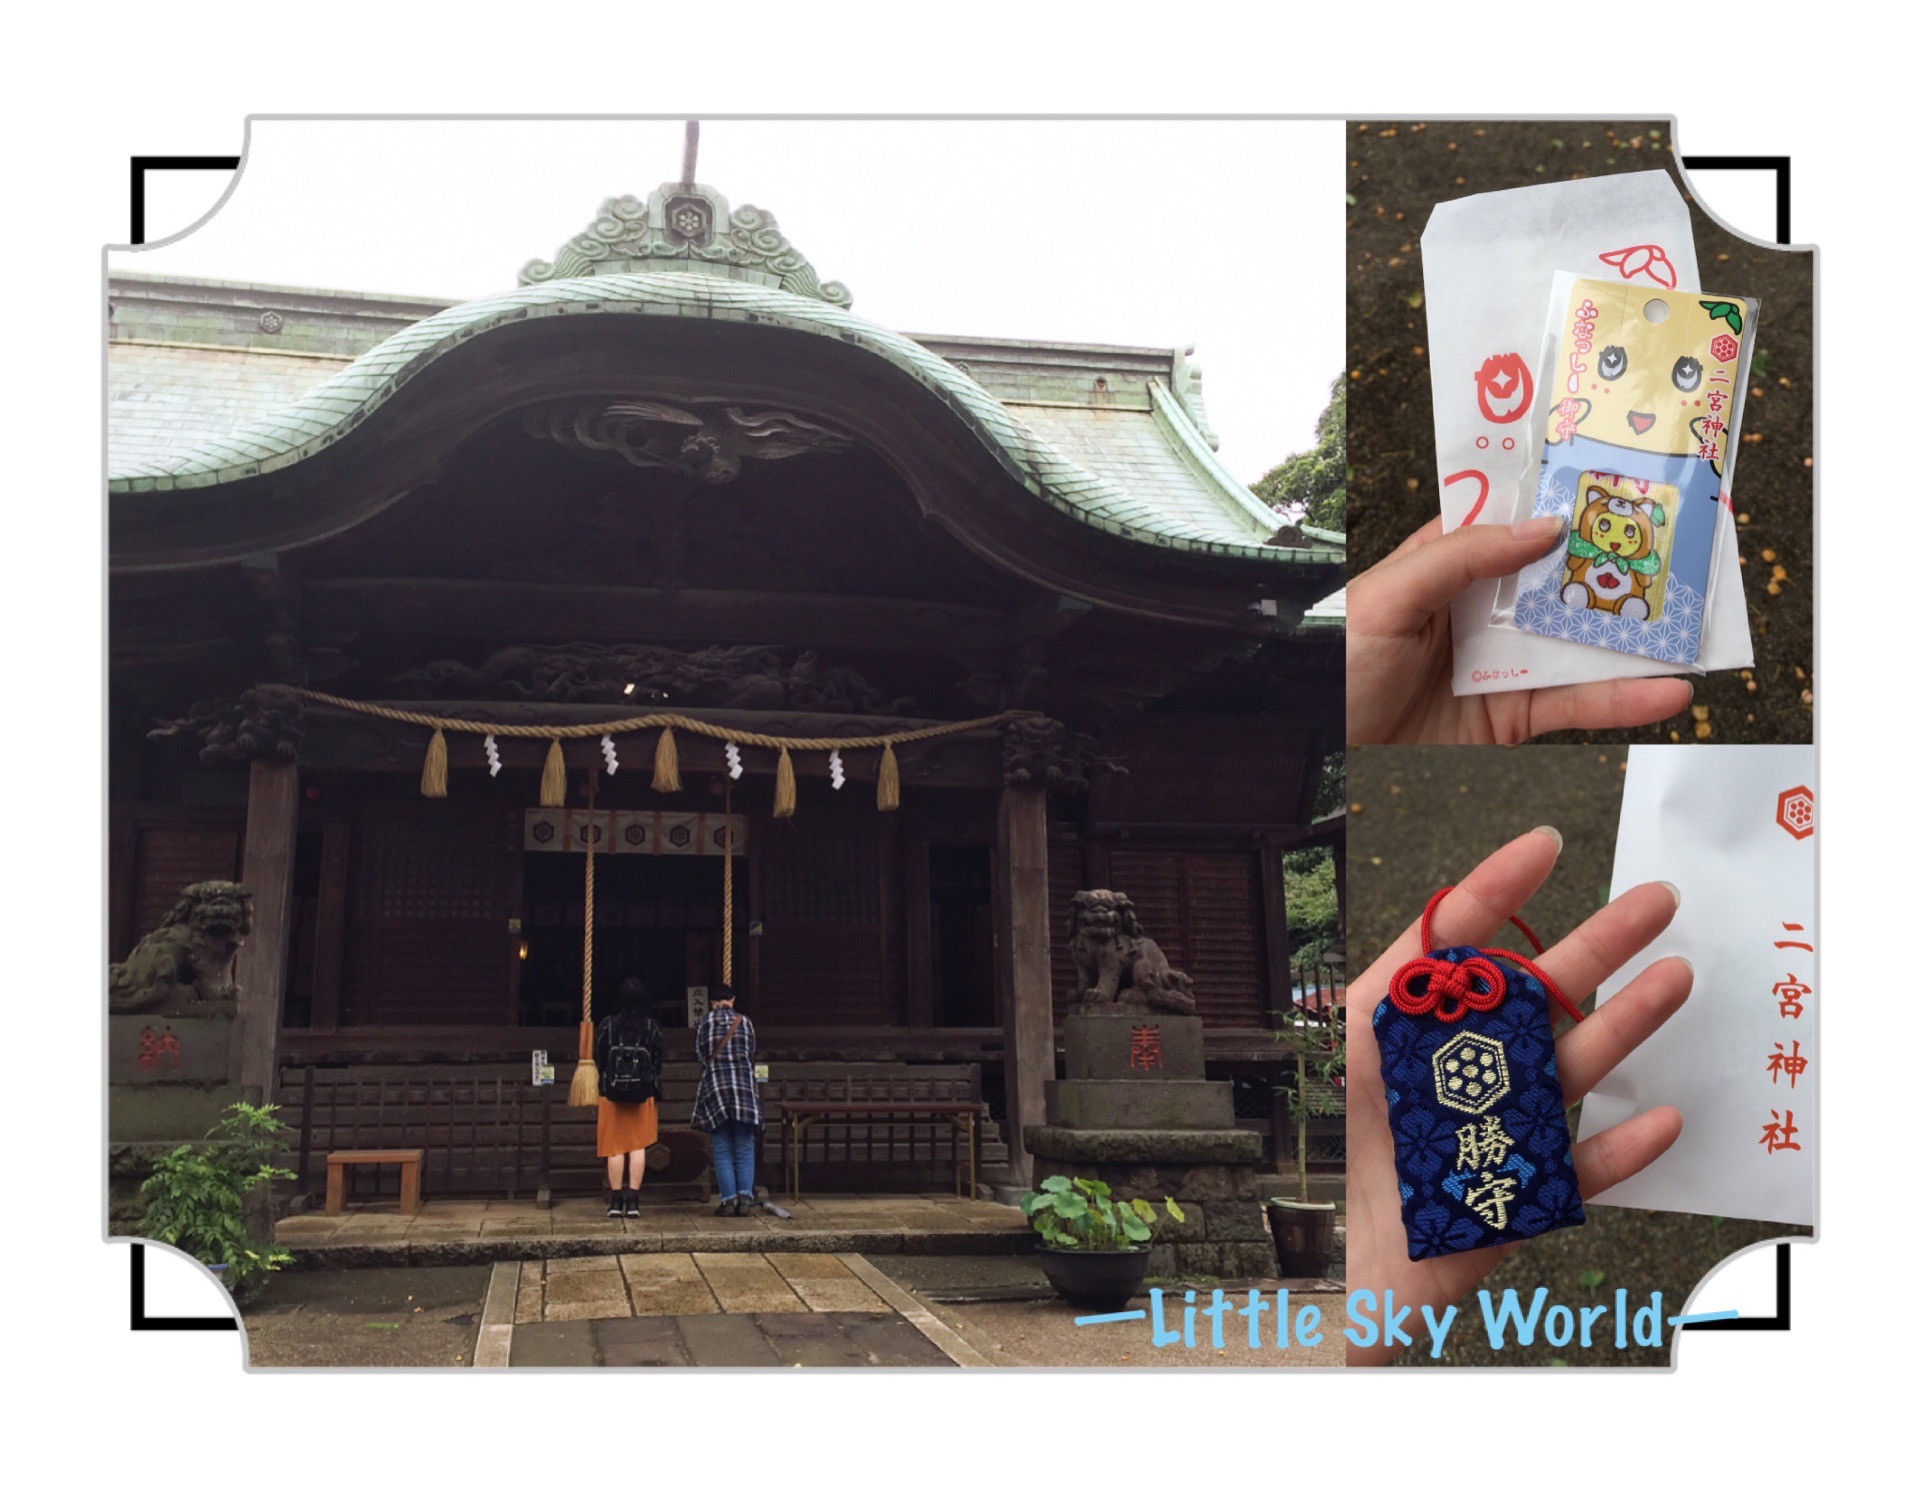 神社著迷 如山谷般的參道 千葉二宮神社 Ninomiya Jinja Little Sky World